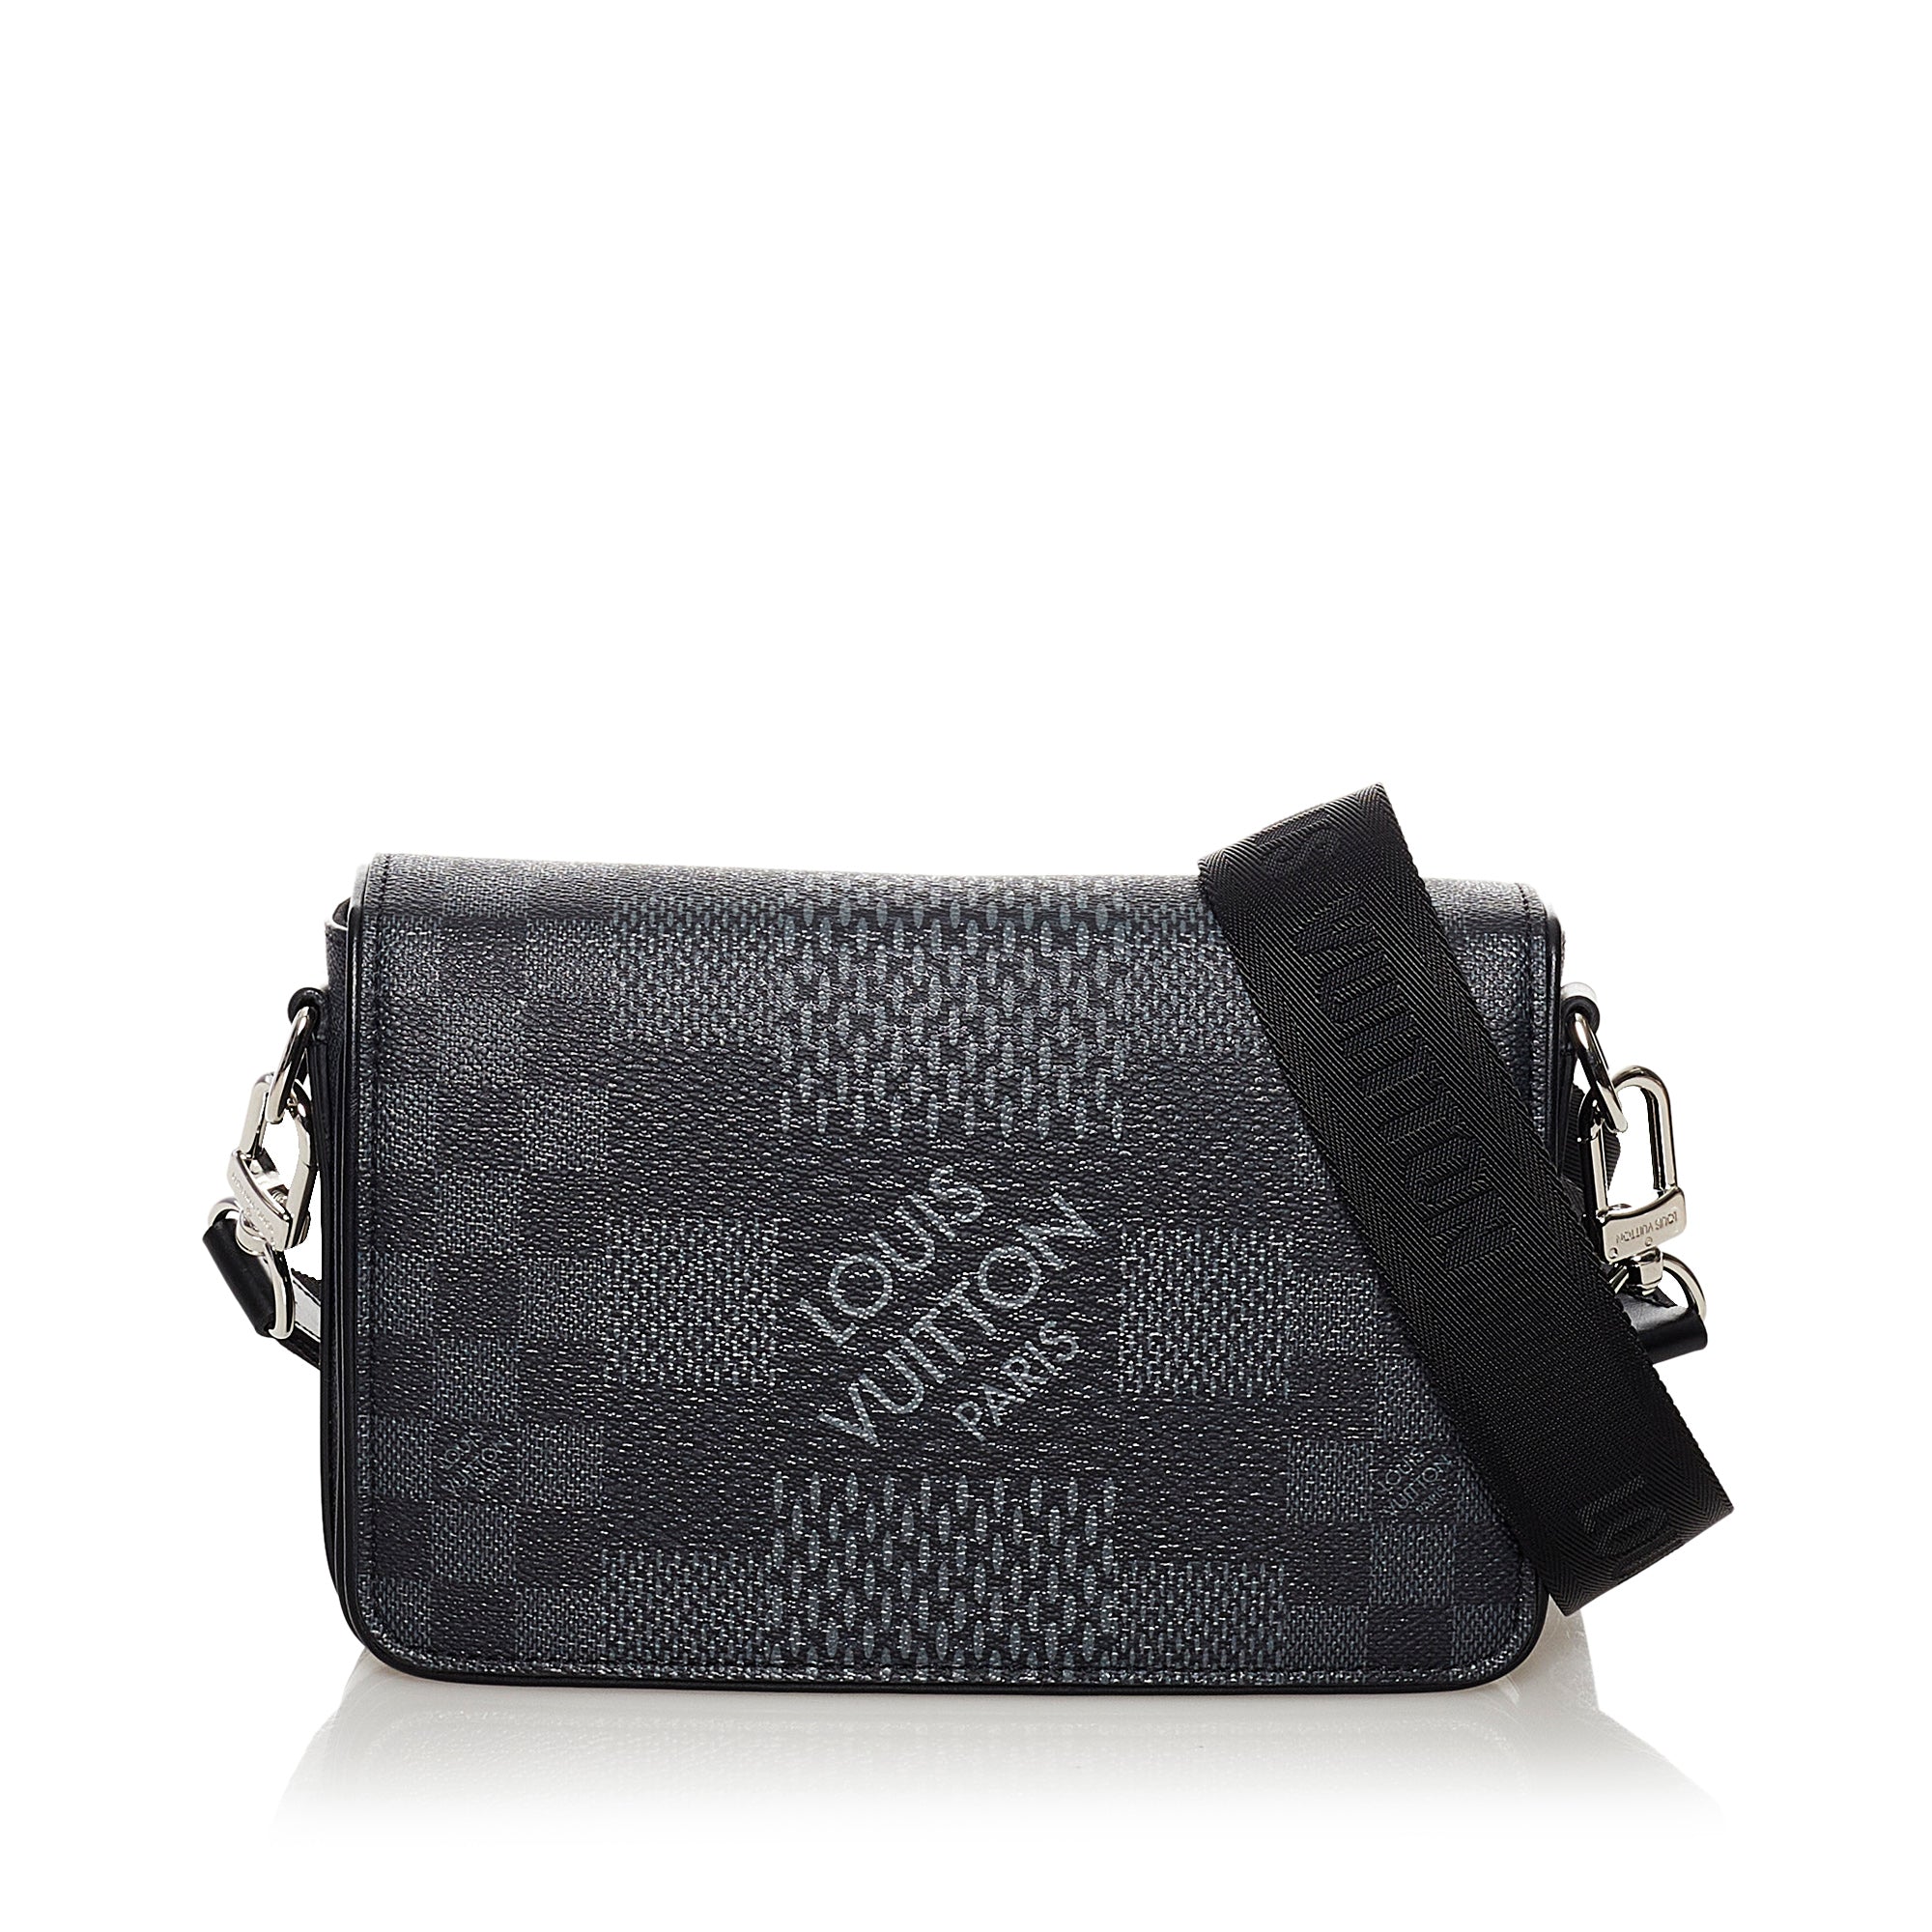 Louis Vuitton Studio Messenger Bag Limited Edition Damier Graphite